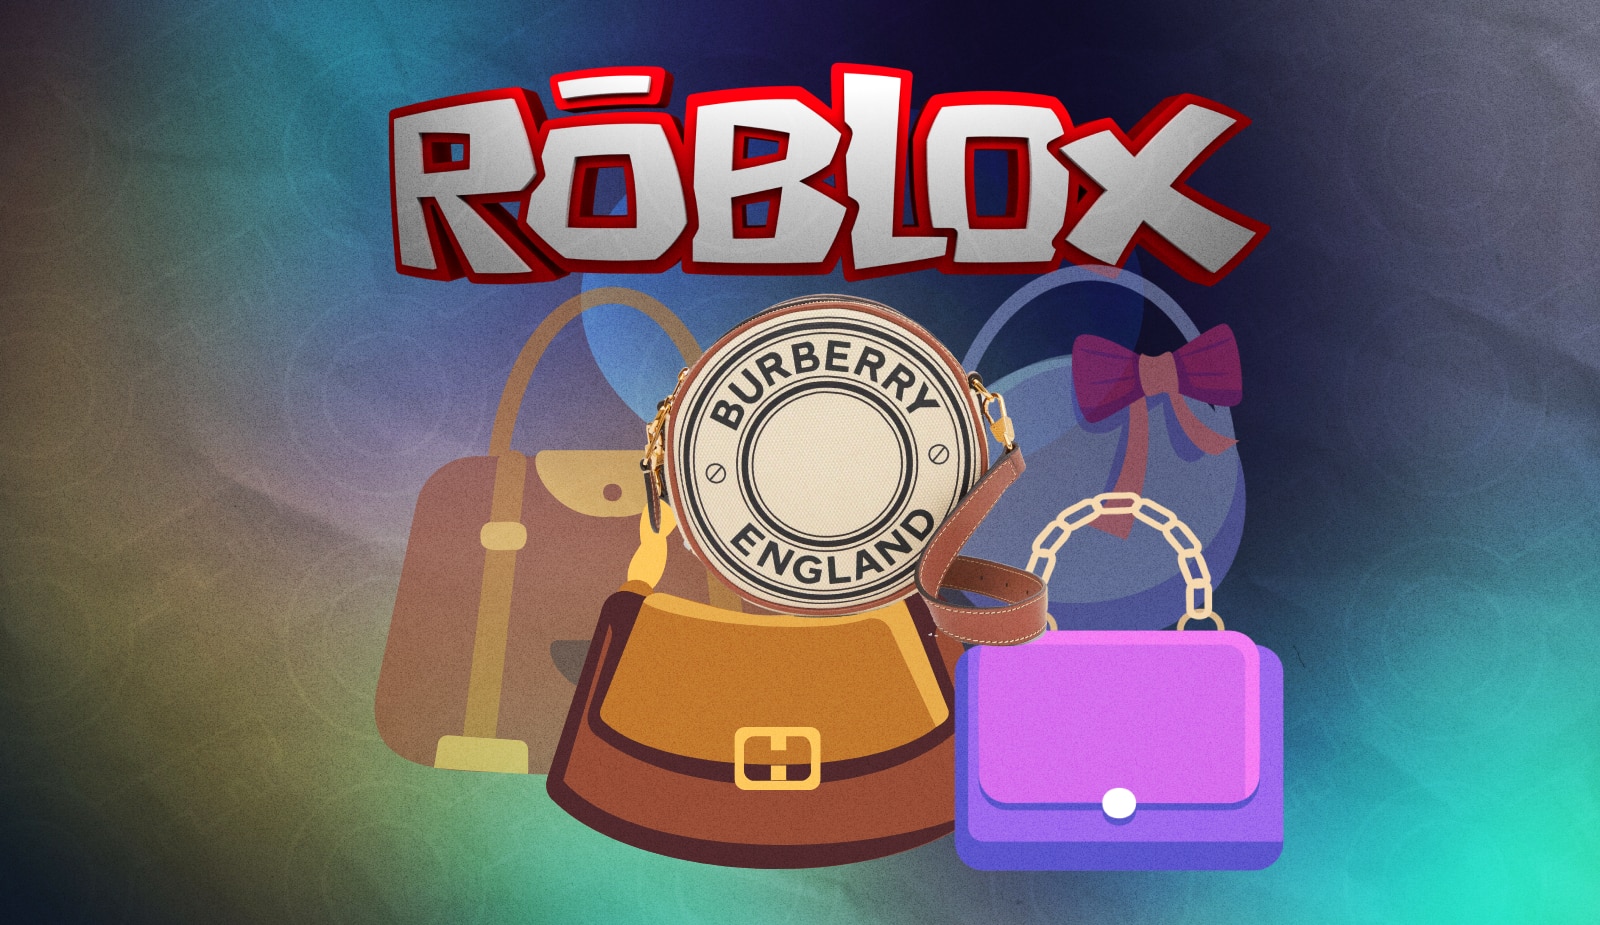 Burberry представила эксклюзивную виртуальную коллекцию сумочек для Roblox. Заглавный коллаж новости.